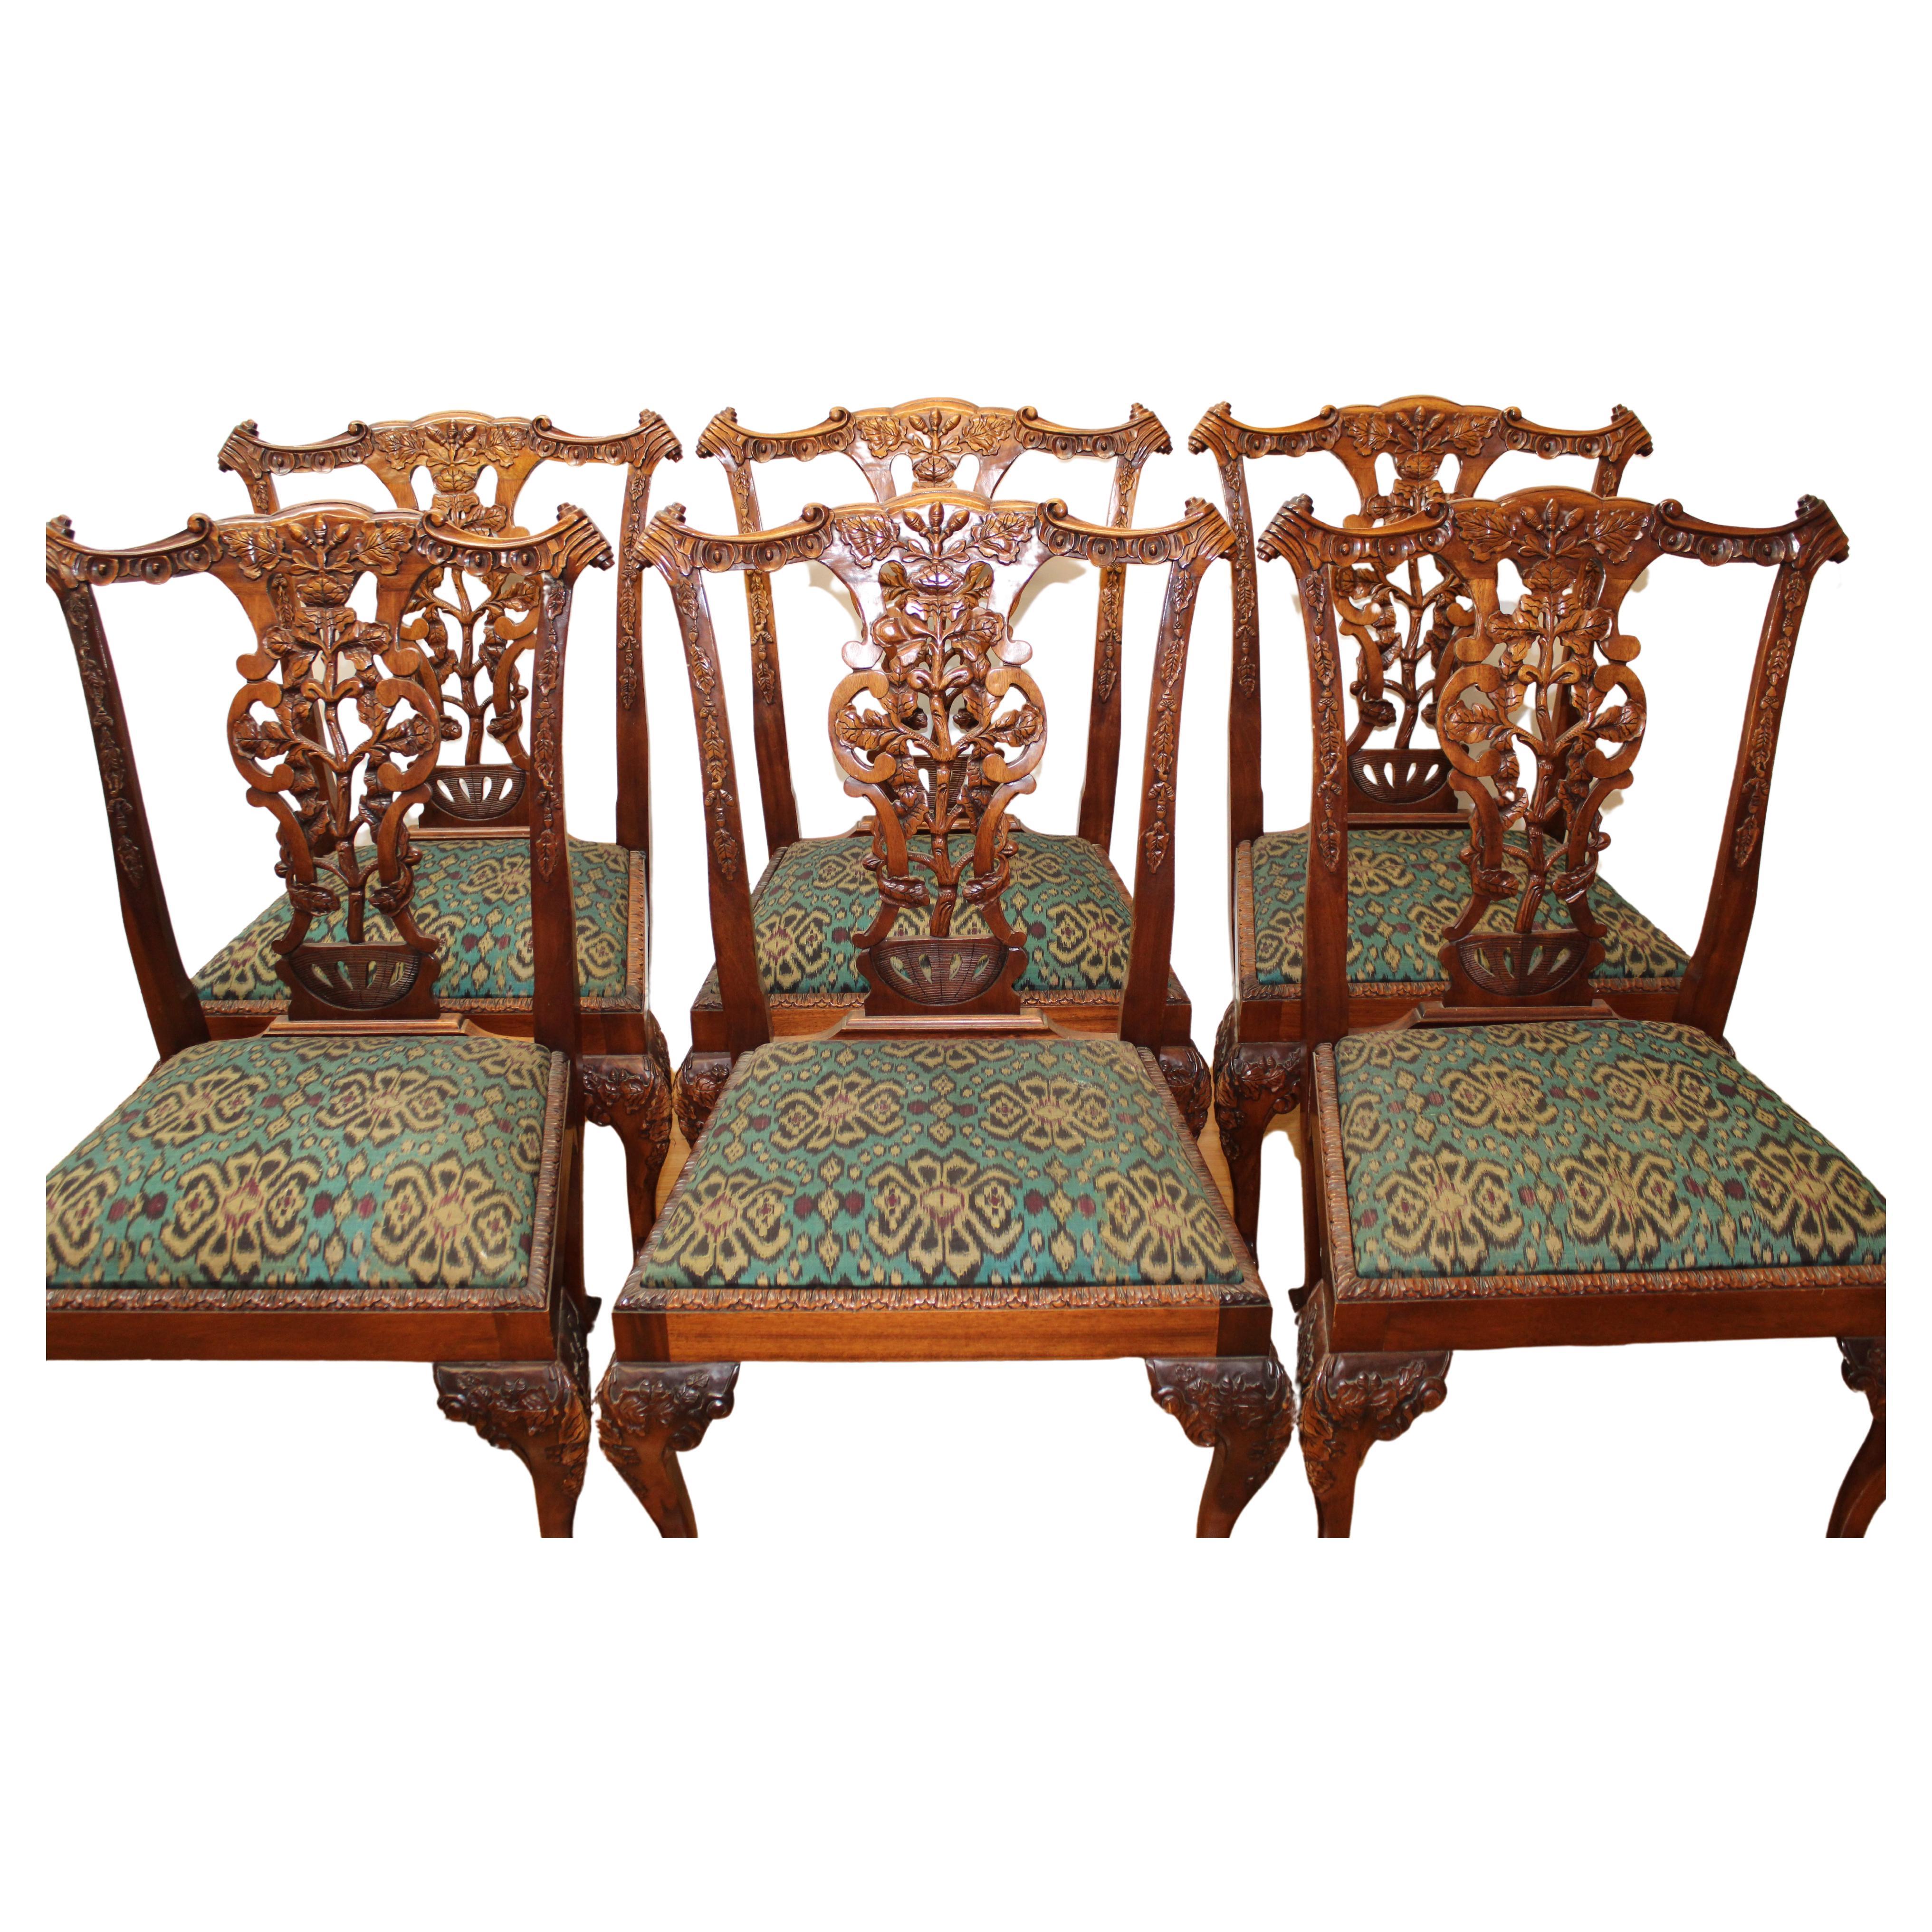 C. Anfang des 20. Jahrhunderts

Satz von 6 Beistellstühlen im Chippendale-Stil, kunstvoll geschnitztes Holz mit Eichel- und Blattmuster und Kugel- und Krallenfüßen.